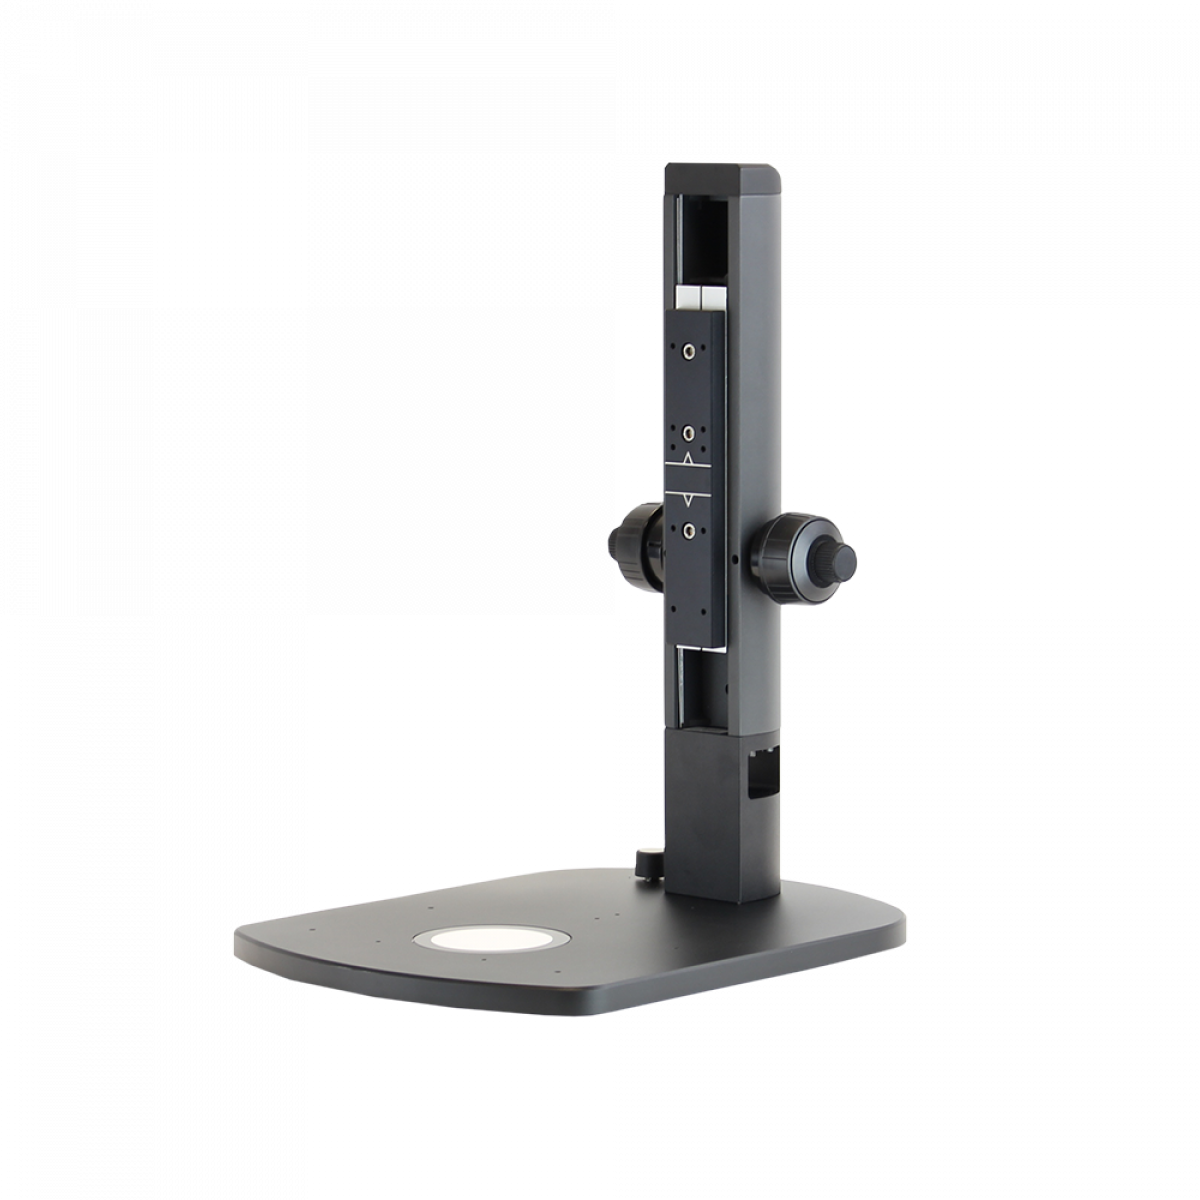 Premium Illuminated Track Stand for Omni 3, Inspex 3 - microscopemarketplace